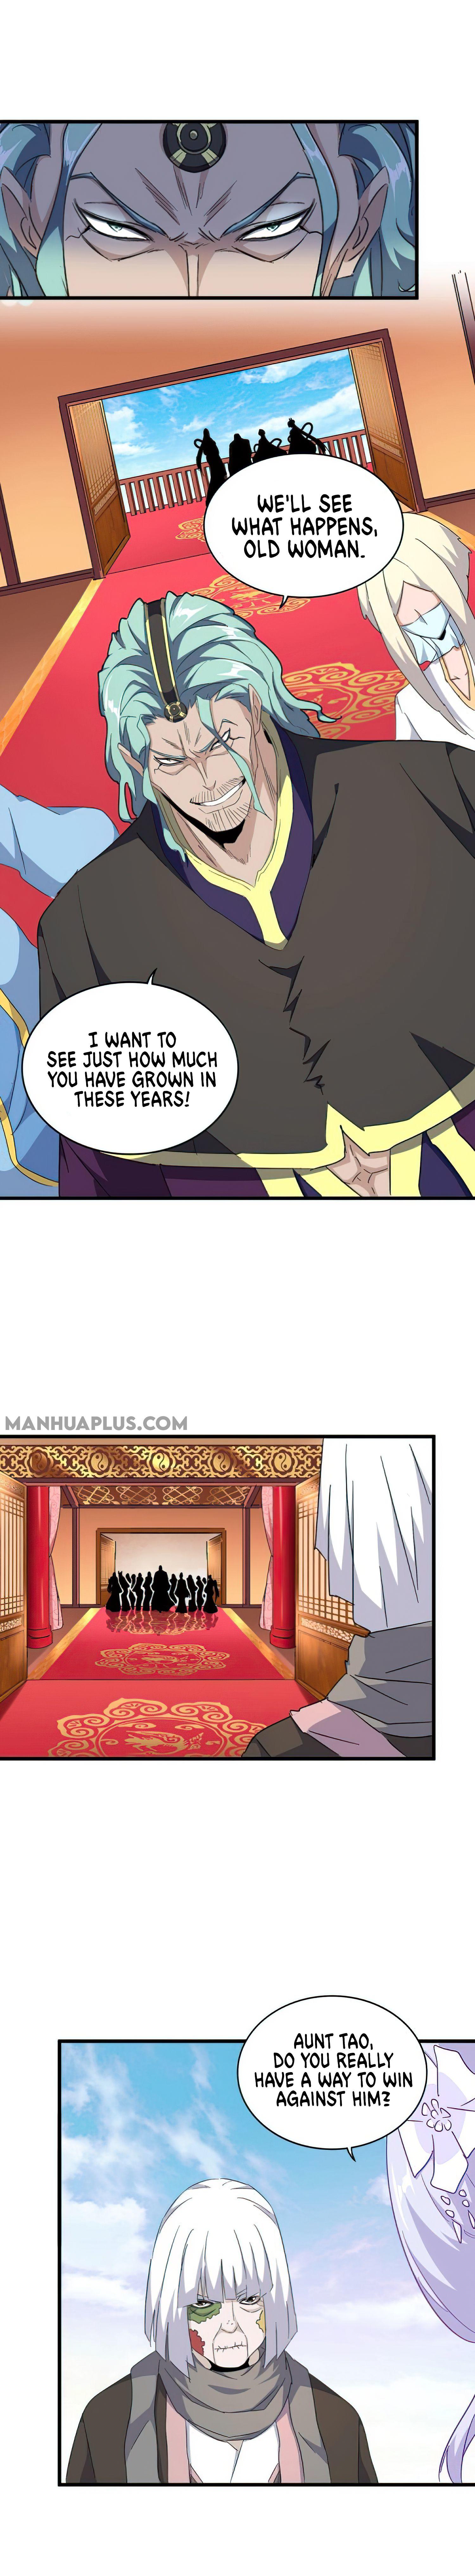 Magic Emperor Chapter 159 page 3 - Mangakakalot